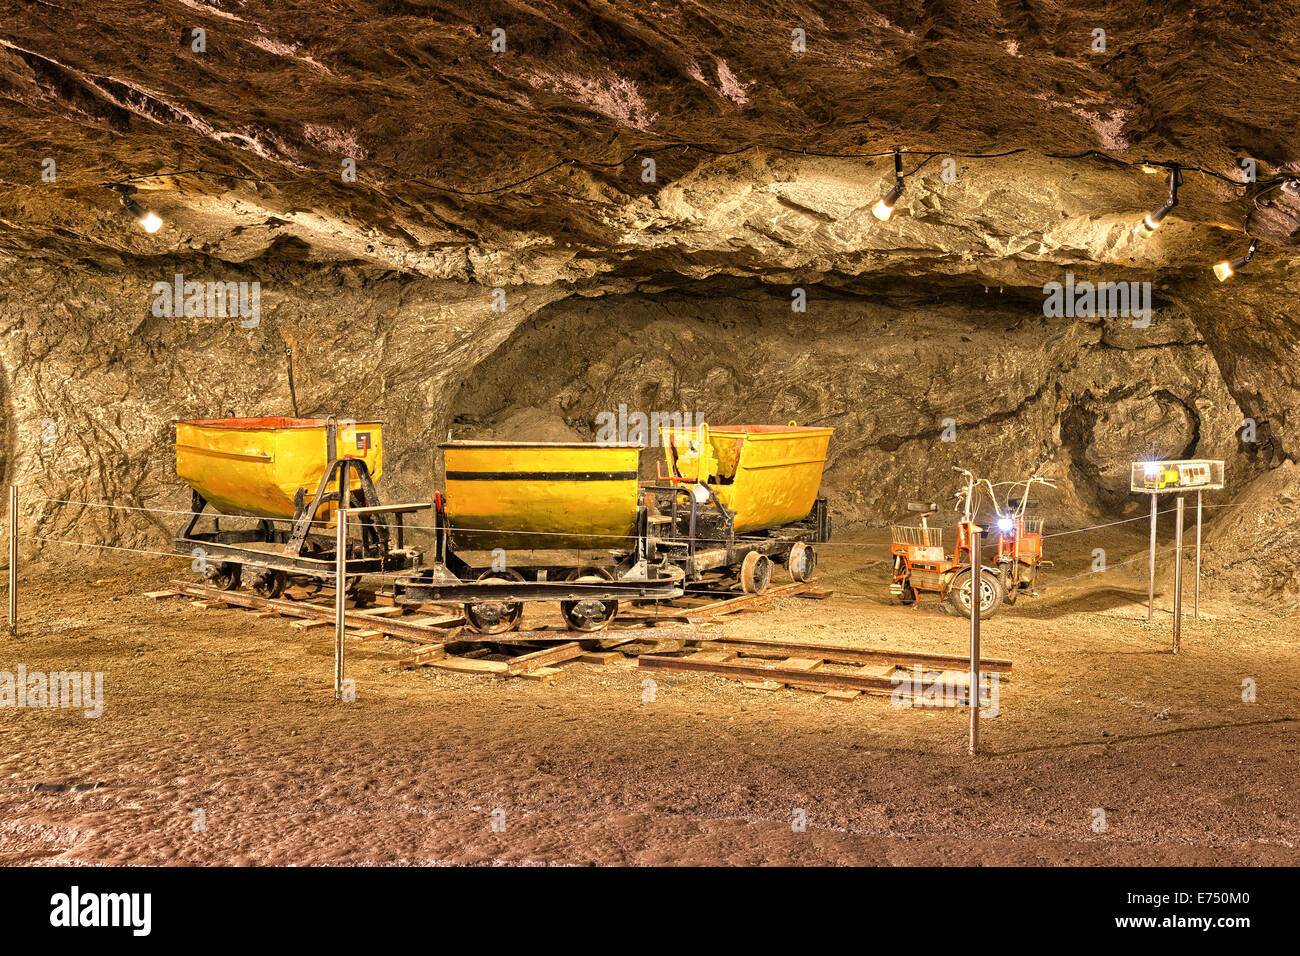 Besucher-Tour durch das Salz mine in Bex zeigt einem ein paar Wagons, die verwendet wurden, um Salz aus den Minen zu transportieren die Salz dep Stockfoto